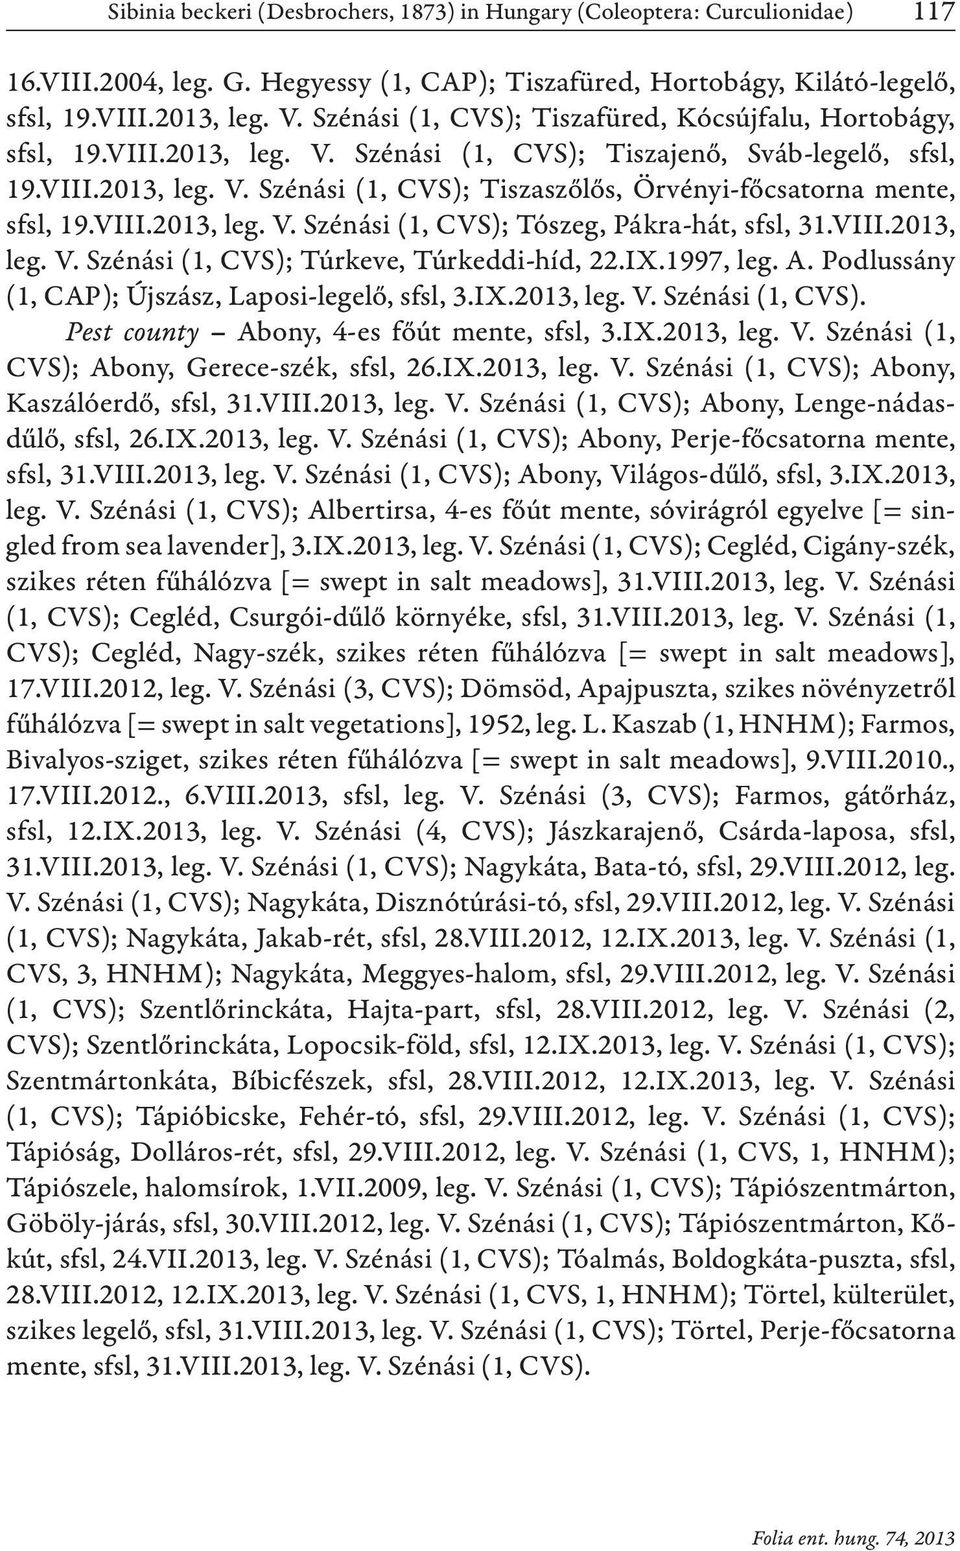 VIII.2013, leg. (1, CVS); Túrkeve, Túrkeddi-híd, 22.IX.1997, leg. A. Podlussány (1, CAP); Újszász, Laposi-legelő, sfsl, 3.IX.2013, leg. (1, CVS). Pest county Abony, 4-es főút mente, sfsl, 3.IX.2013, leg. (1, CVS); Abony, Gerece-szék, sfsl, 26.